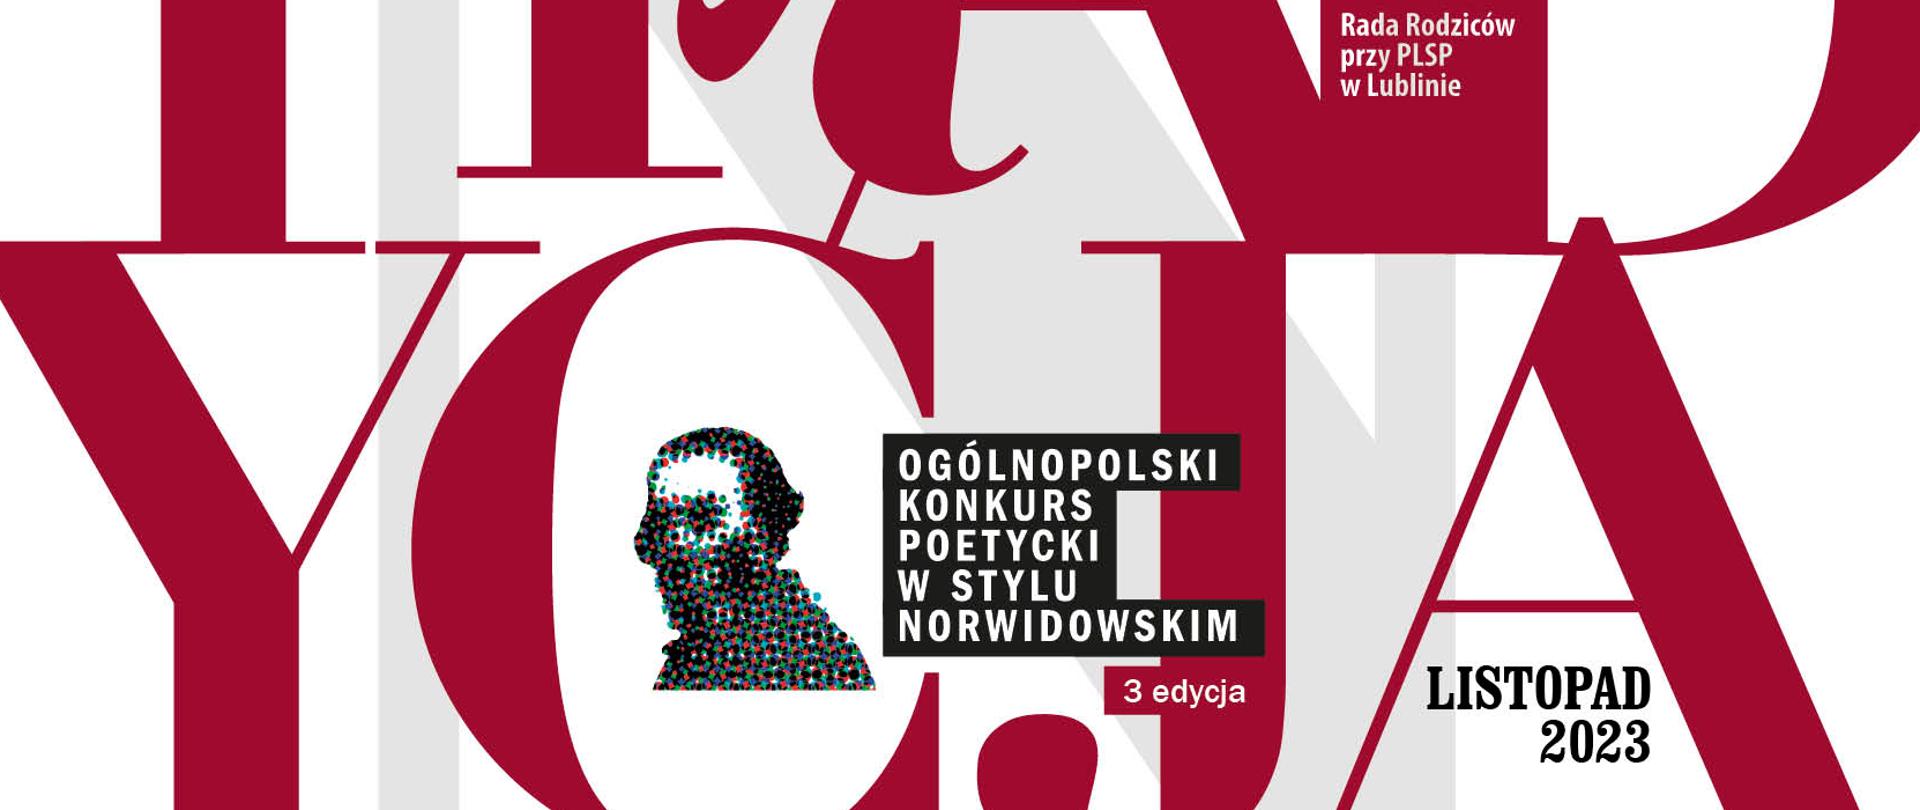 Czerwony, stylizowany tekst TRADYCJA, graficzna prezentacja portretu Cypriana Norwida z tekstem OGÓLNOPOLSKI KONKURS POETYCKI W STYLU NORWIDOWSKIM oraz LISTOPAD 2023. U dołu logotypy patronów